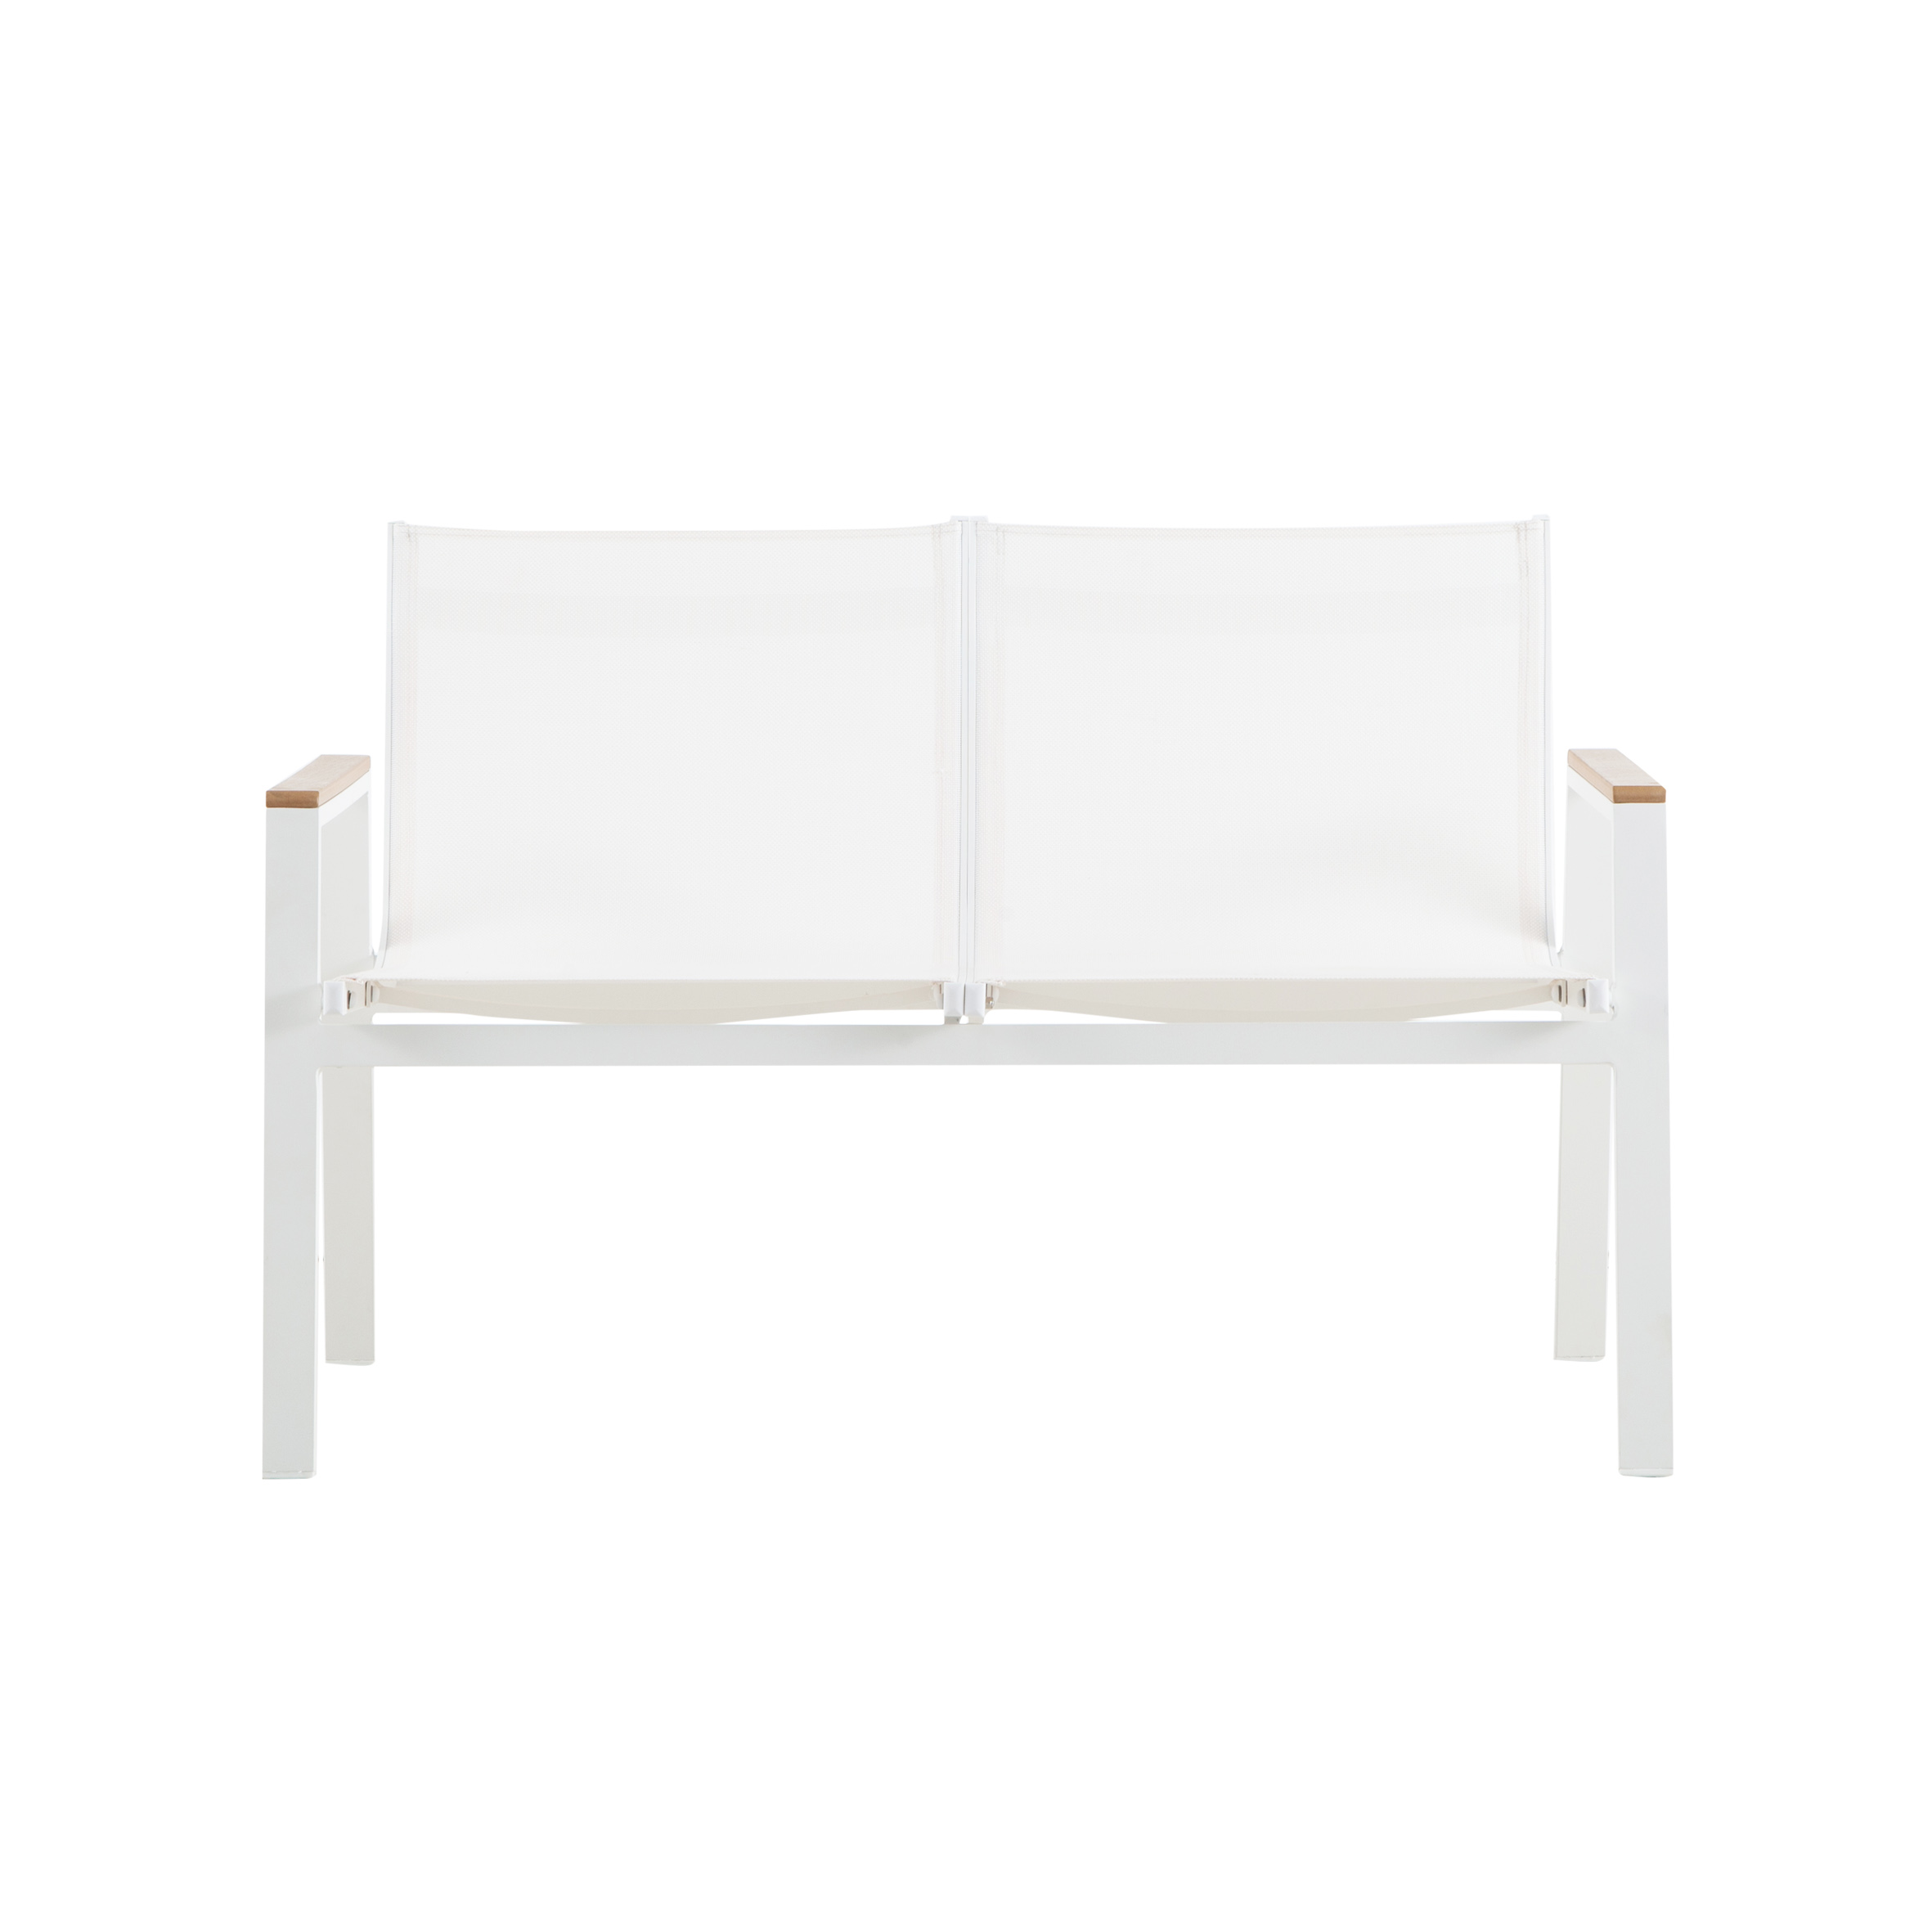 Snow white double sofa (Poly wood) S1